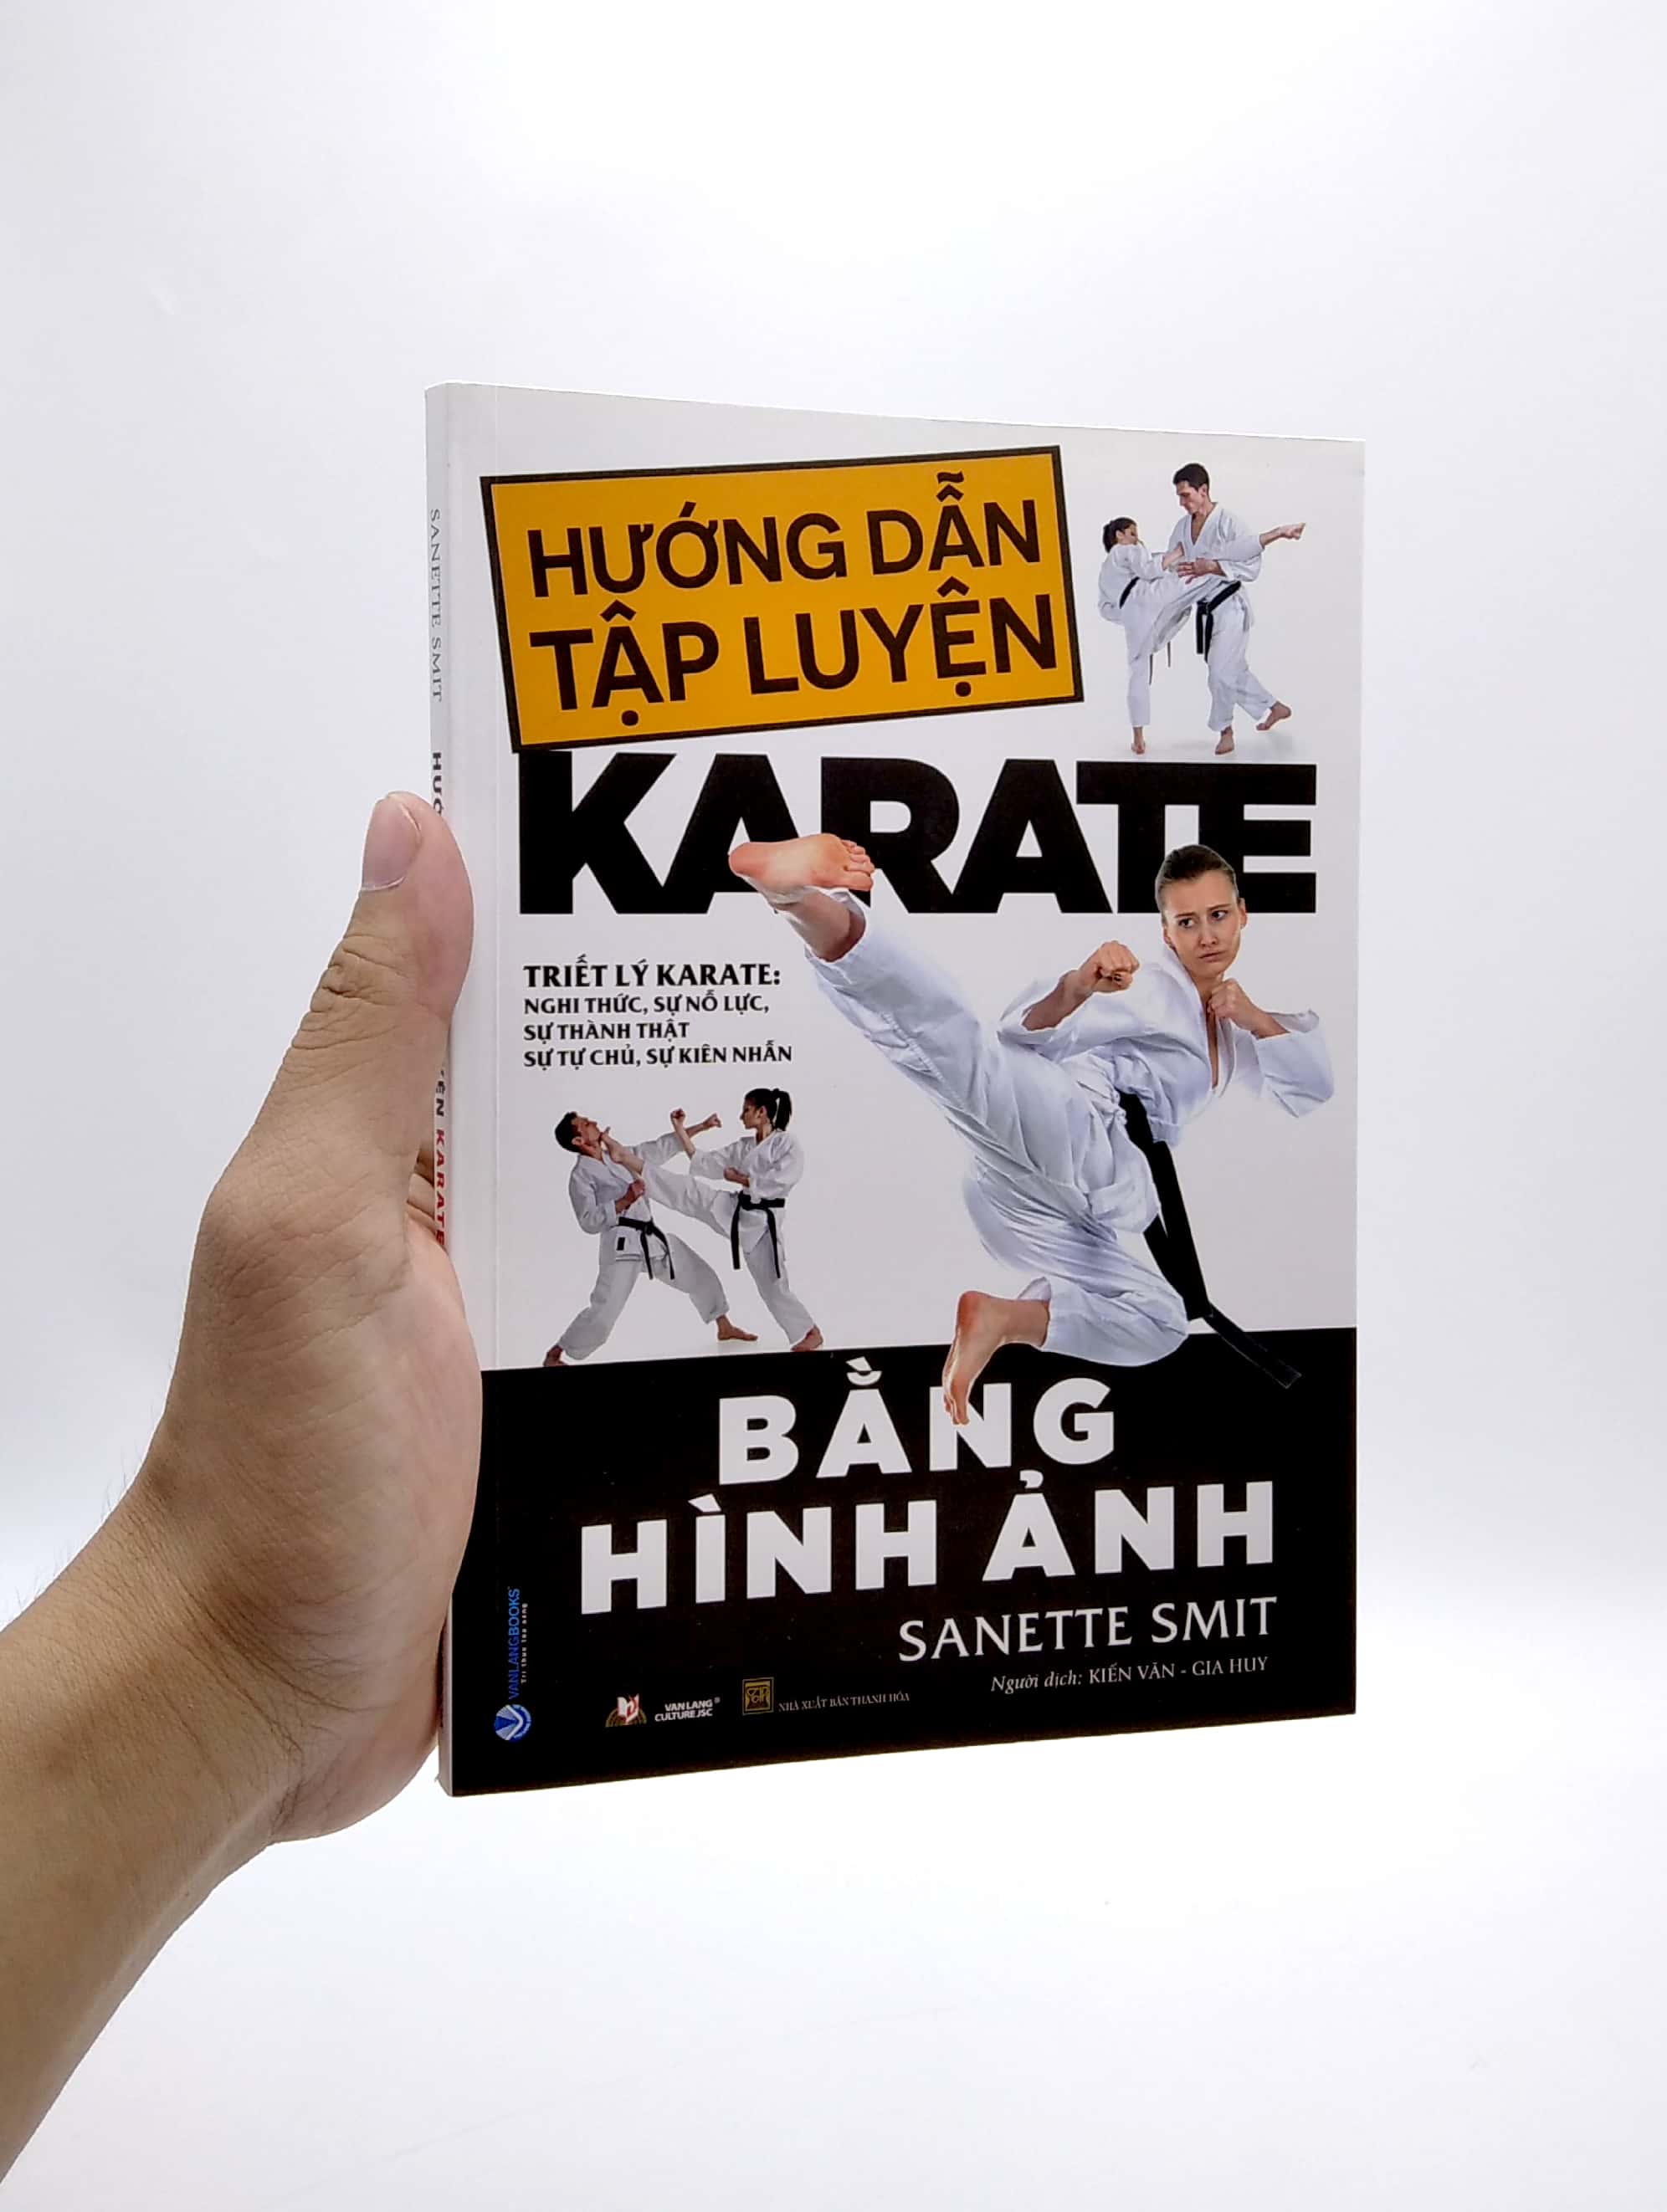 Hướng Dẫn Tập Luyện Karate Bằng Hình Ảnh PDF